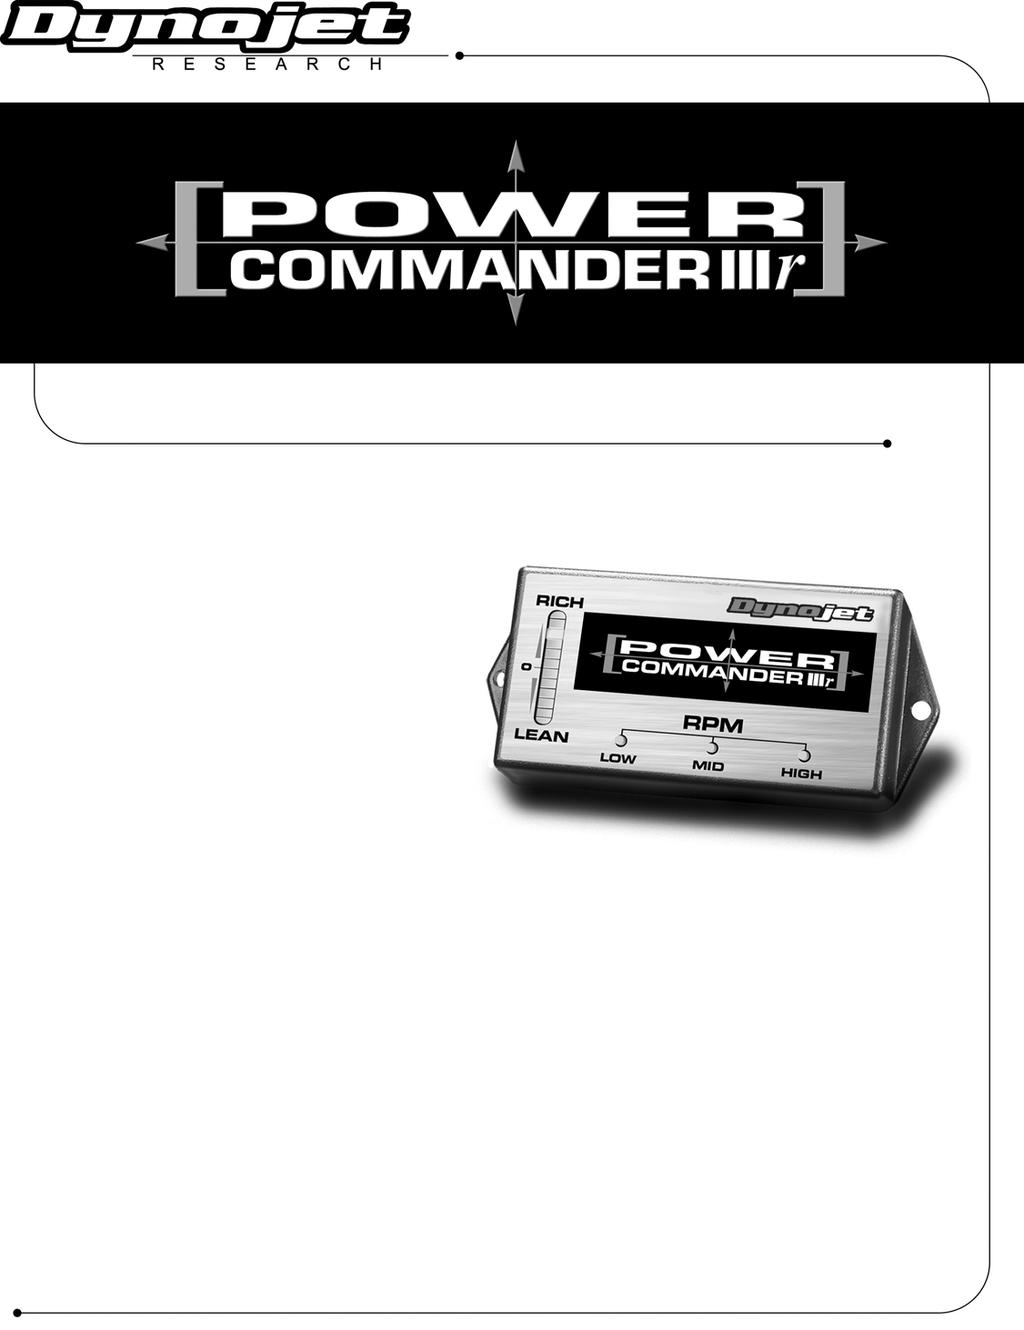 1999-2001 Harley Davidson EFI Twin Cam 88 (Sólo modelos USA) Lista de Componentes 1 Power Commander 1 CD-ROM 1 Manual de instrucciones 3 Bandas de sujeción 2 Adhesivos Power Commander 2 Adhesivos